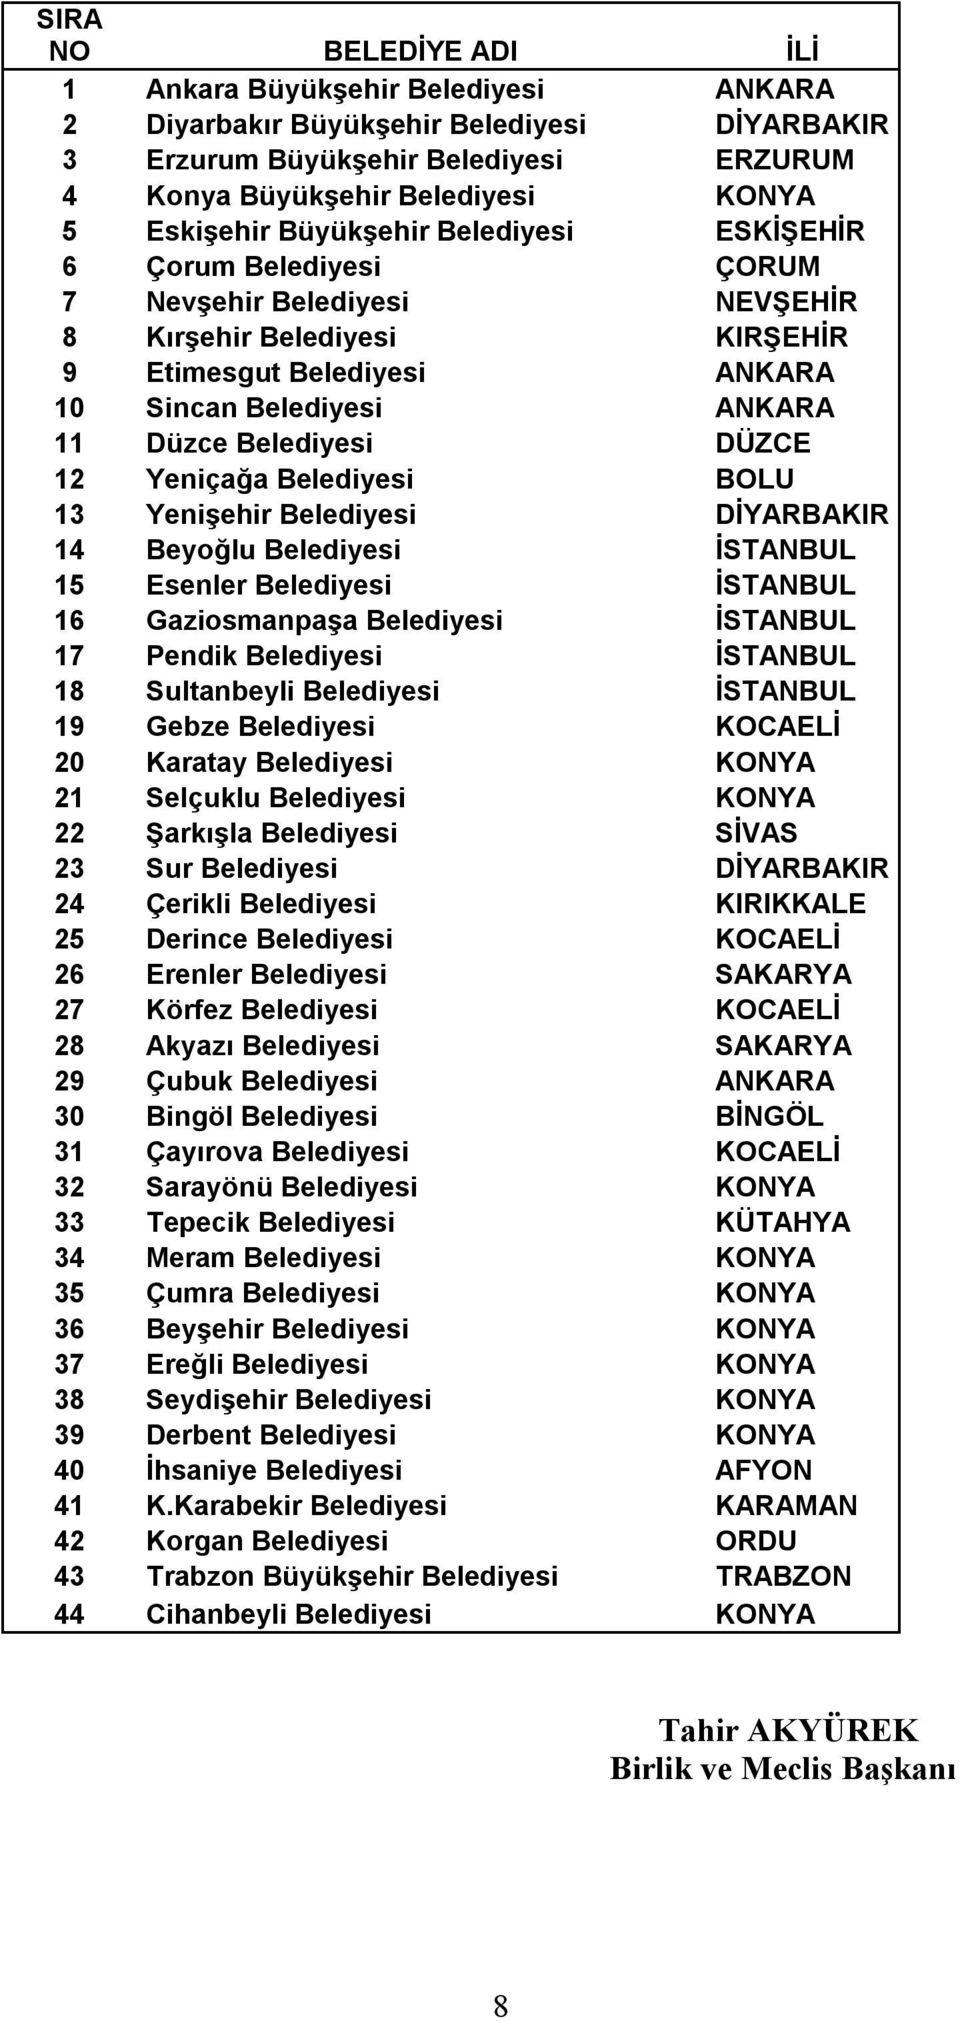 DÜZCE 12 Yeniçağa Belediyesi BOLU 13 Yenişehir Belediyesi DİYARBAKIR 14 Beyoğlu Belediyesi İSTANBUL 15 Esenler Belediyesi İSTANBUL 16 Gaziosmanpaşa Belediyesi İSTANBUL 17 Pendik Belediyesi İSTANBUL